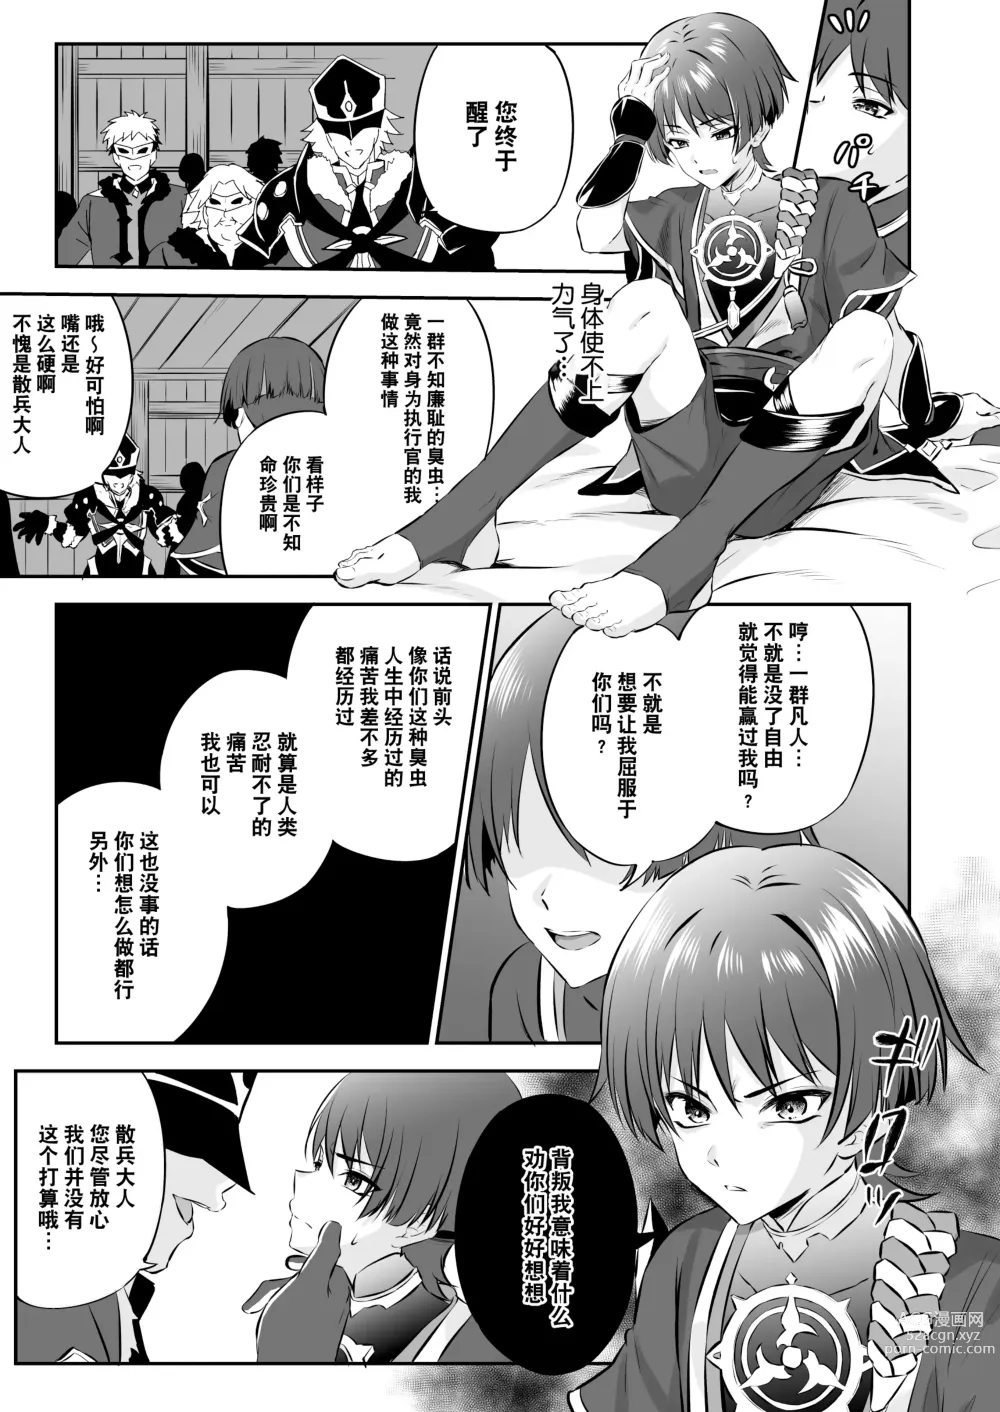 Page 12 of doujinshi  散兵大人哪怕是因为药物兴奋也不可能任由愚人众肆意摆布的吧